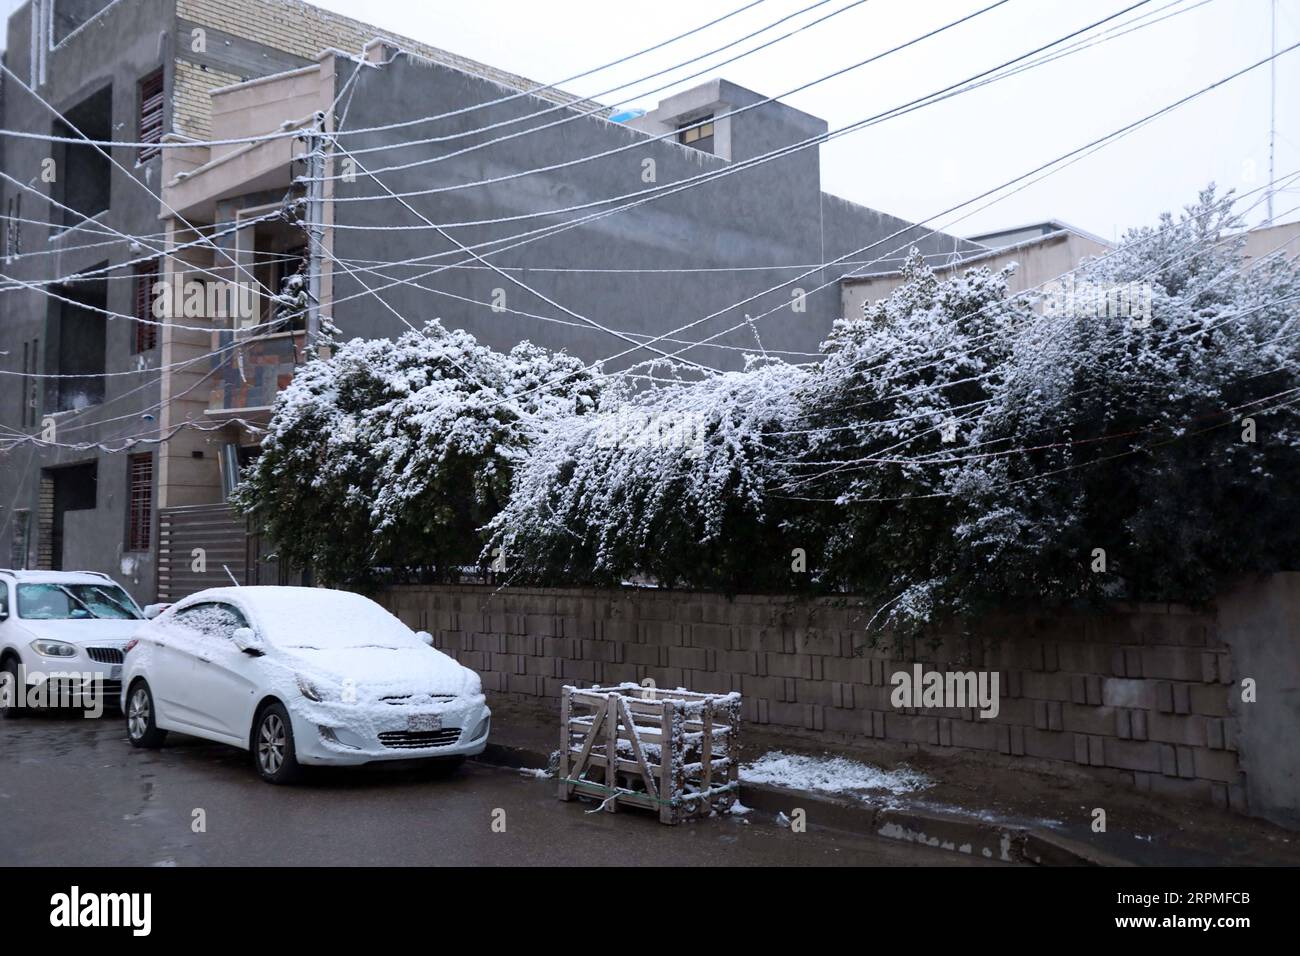 200211 -- BAGDAD, 11. Februar 2020 Xinhua -- Foto vom 11. Februar 2020 zeigt den Schnee in Bagdad, Irak. Viele Menschen in der irakischen Hauptstadt Bagdad wachten am Dienstag früh auf, um einen seltenen Schneefall in der Stadt zu beobachten. Schnee im Irak ist im nördlichen Teil des Landes häufig zu sehen, insbesondere in den Gebirgsregionen. Für die meisten Bürger in Bagdad ist es selten, dass sie Schnee sehen. Bagdad war im Januar 2008 zum ersten Mal seit über 100 Jahren Zeuge von Schneefällen. Xinhua/Khalil Dawood IRAQ-BAGDAD-SNOW PUBLICATIONxNOTxINxCHN Stockfoto